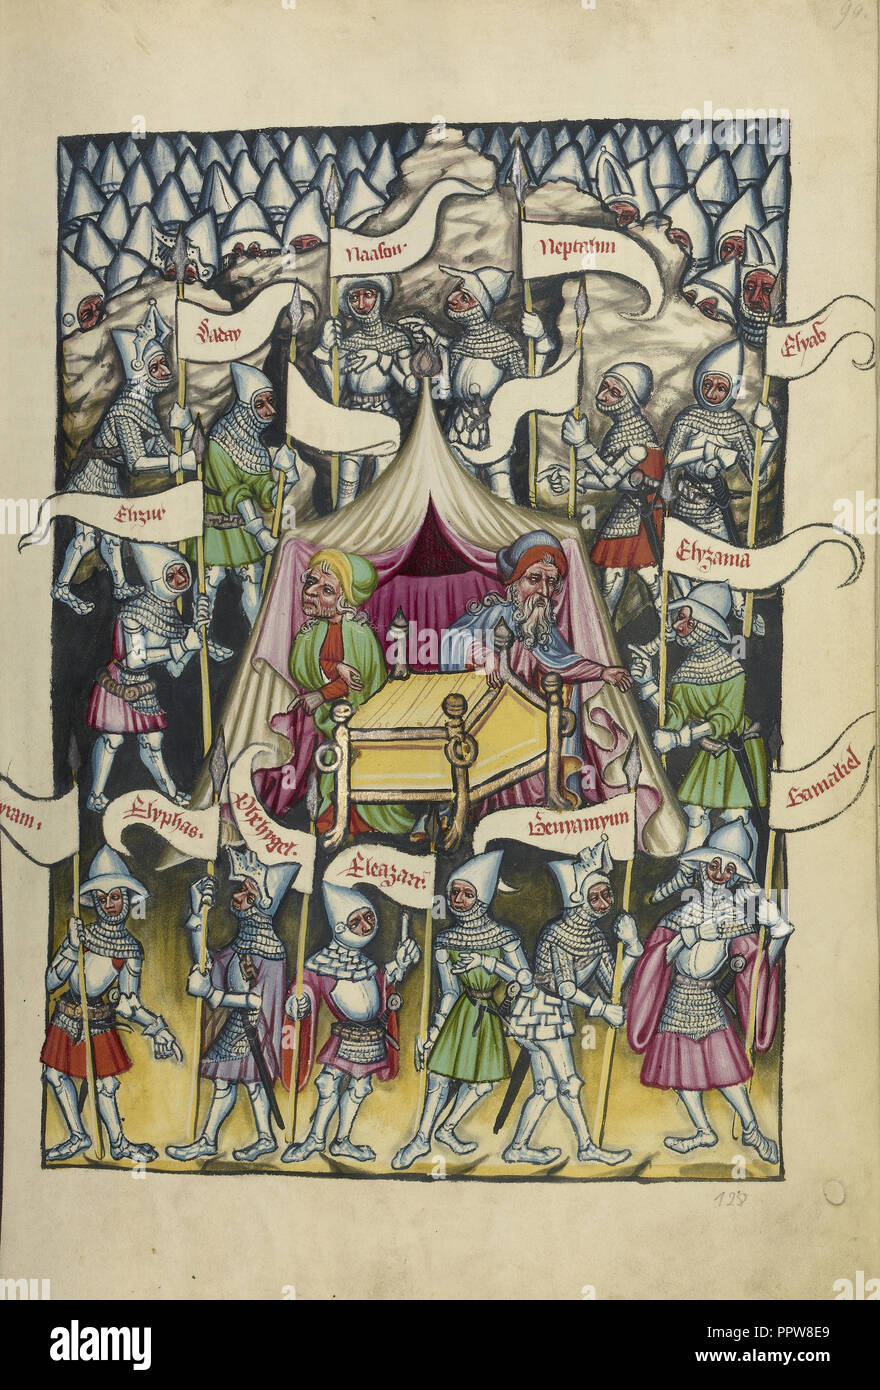 Les douze tribus d'Israël, Regensburg, Bavière, Allemagne ; 1400 - 1410 ; température de couleurs, or, argent, de peinture et d'encre Banque D'Images